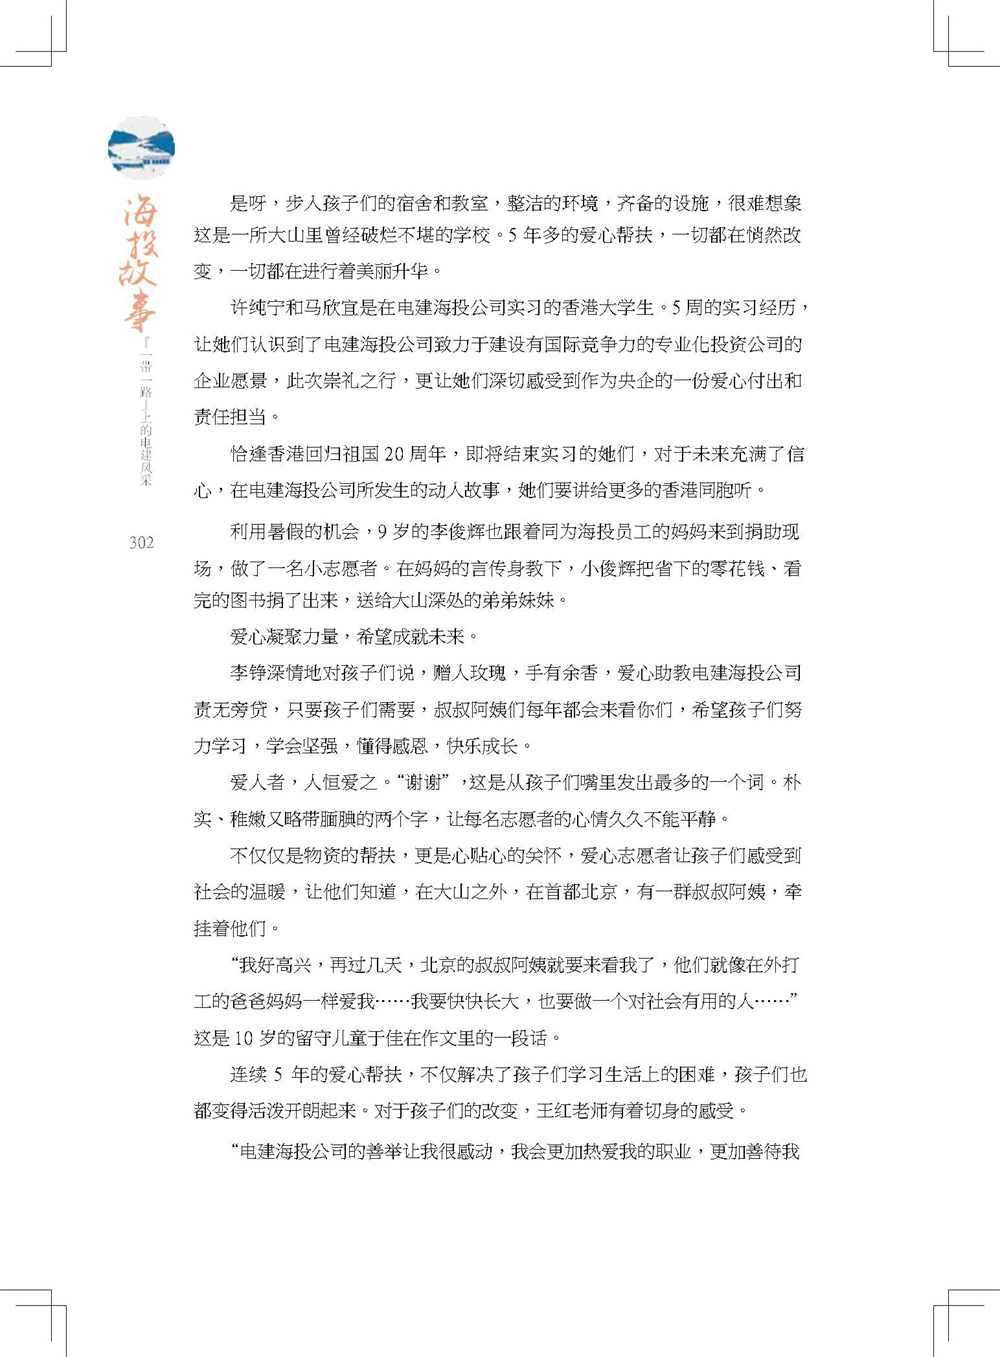 中国电建集团海外投资有限公司《海投故事》